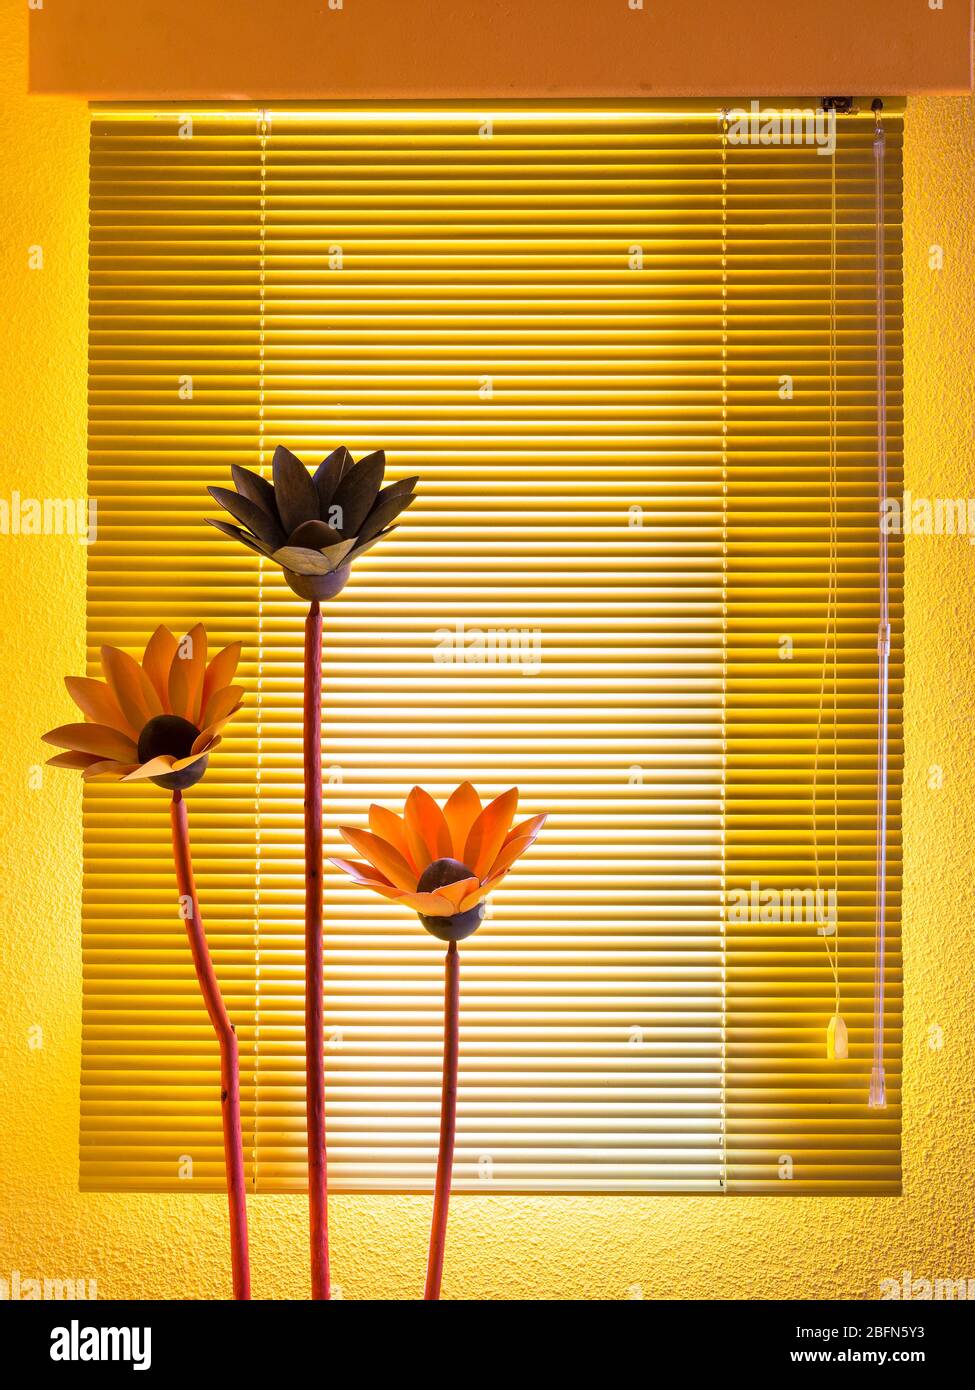 fond jaune et orange avec stores vénitiens et fleurs. décoration de la maison Banque D'Images